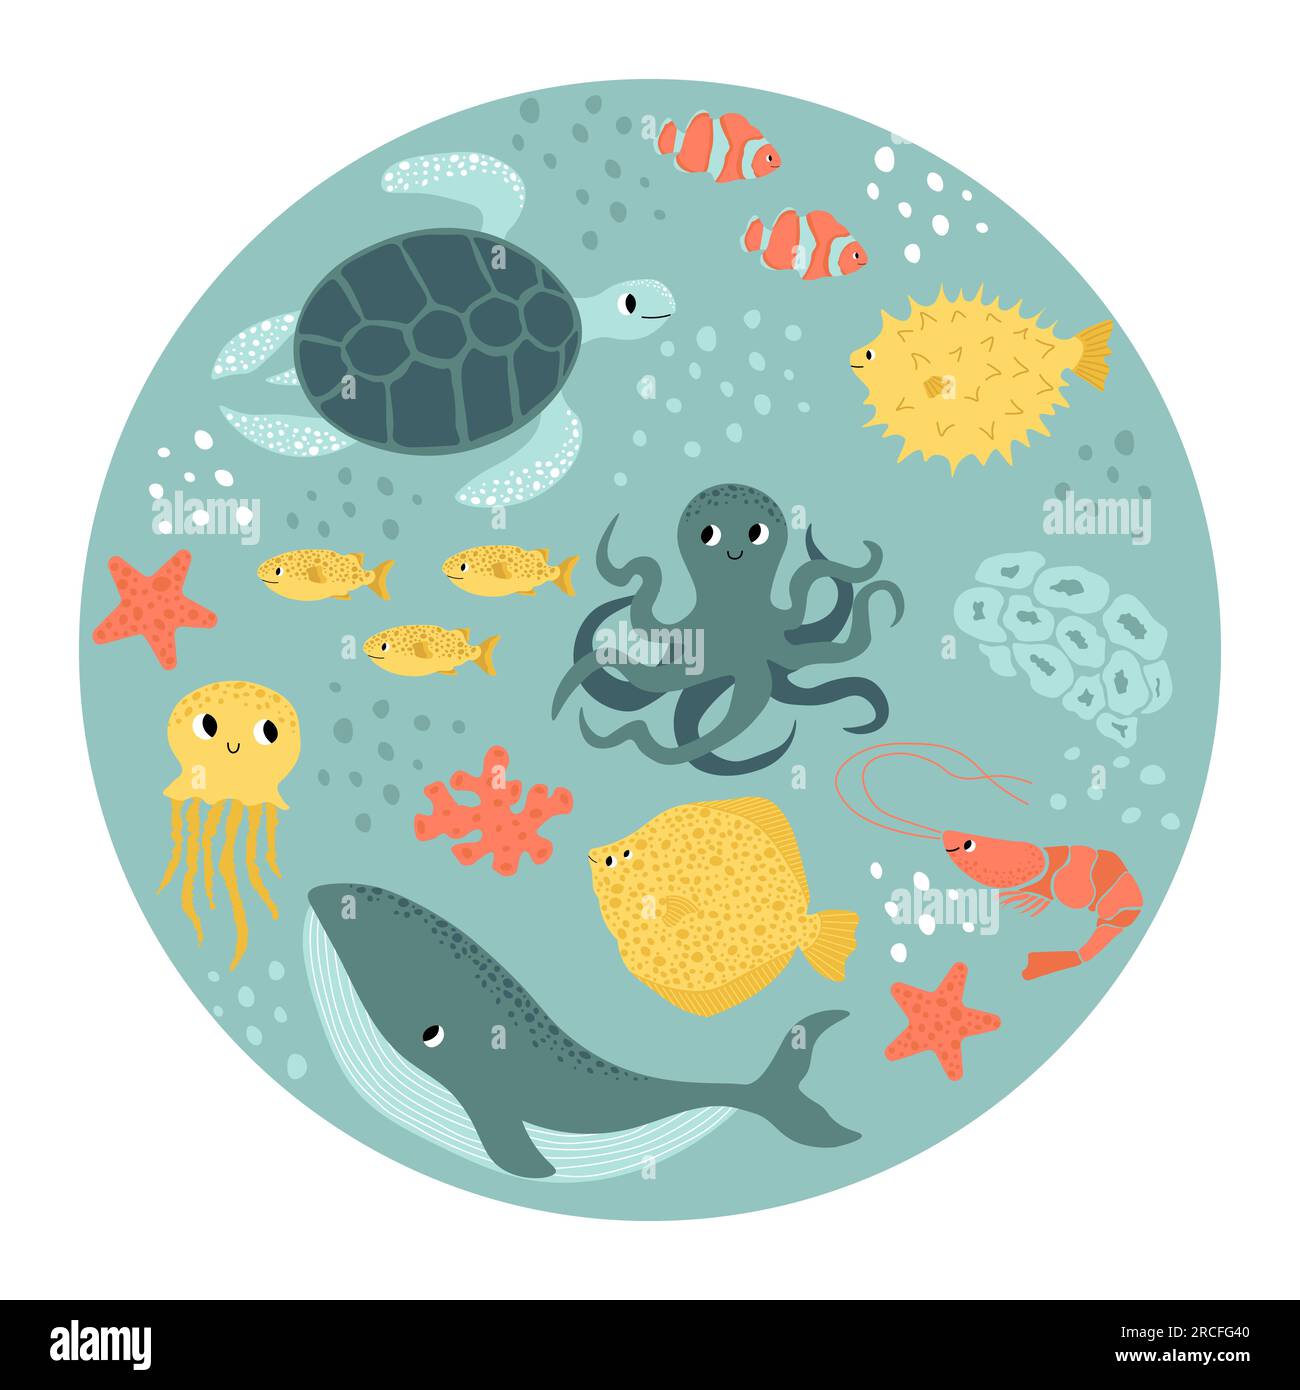 Vektor Ozean Illustration mit Wal, Tintenfisch, Schildkröte, Flunder, Garnelen, Clownfische, Seesterne. Unterwassertiere. Ökologisches Design für Banner Stock Vektor